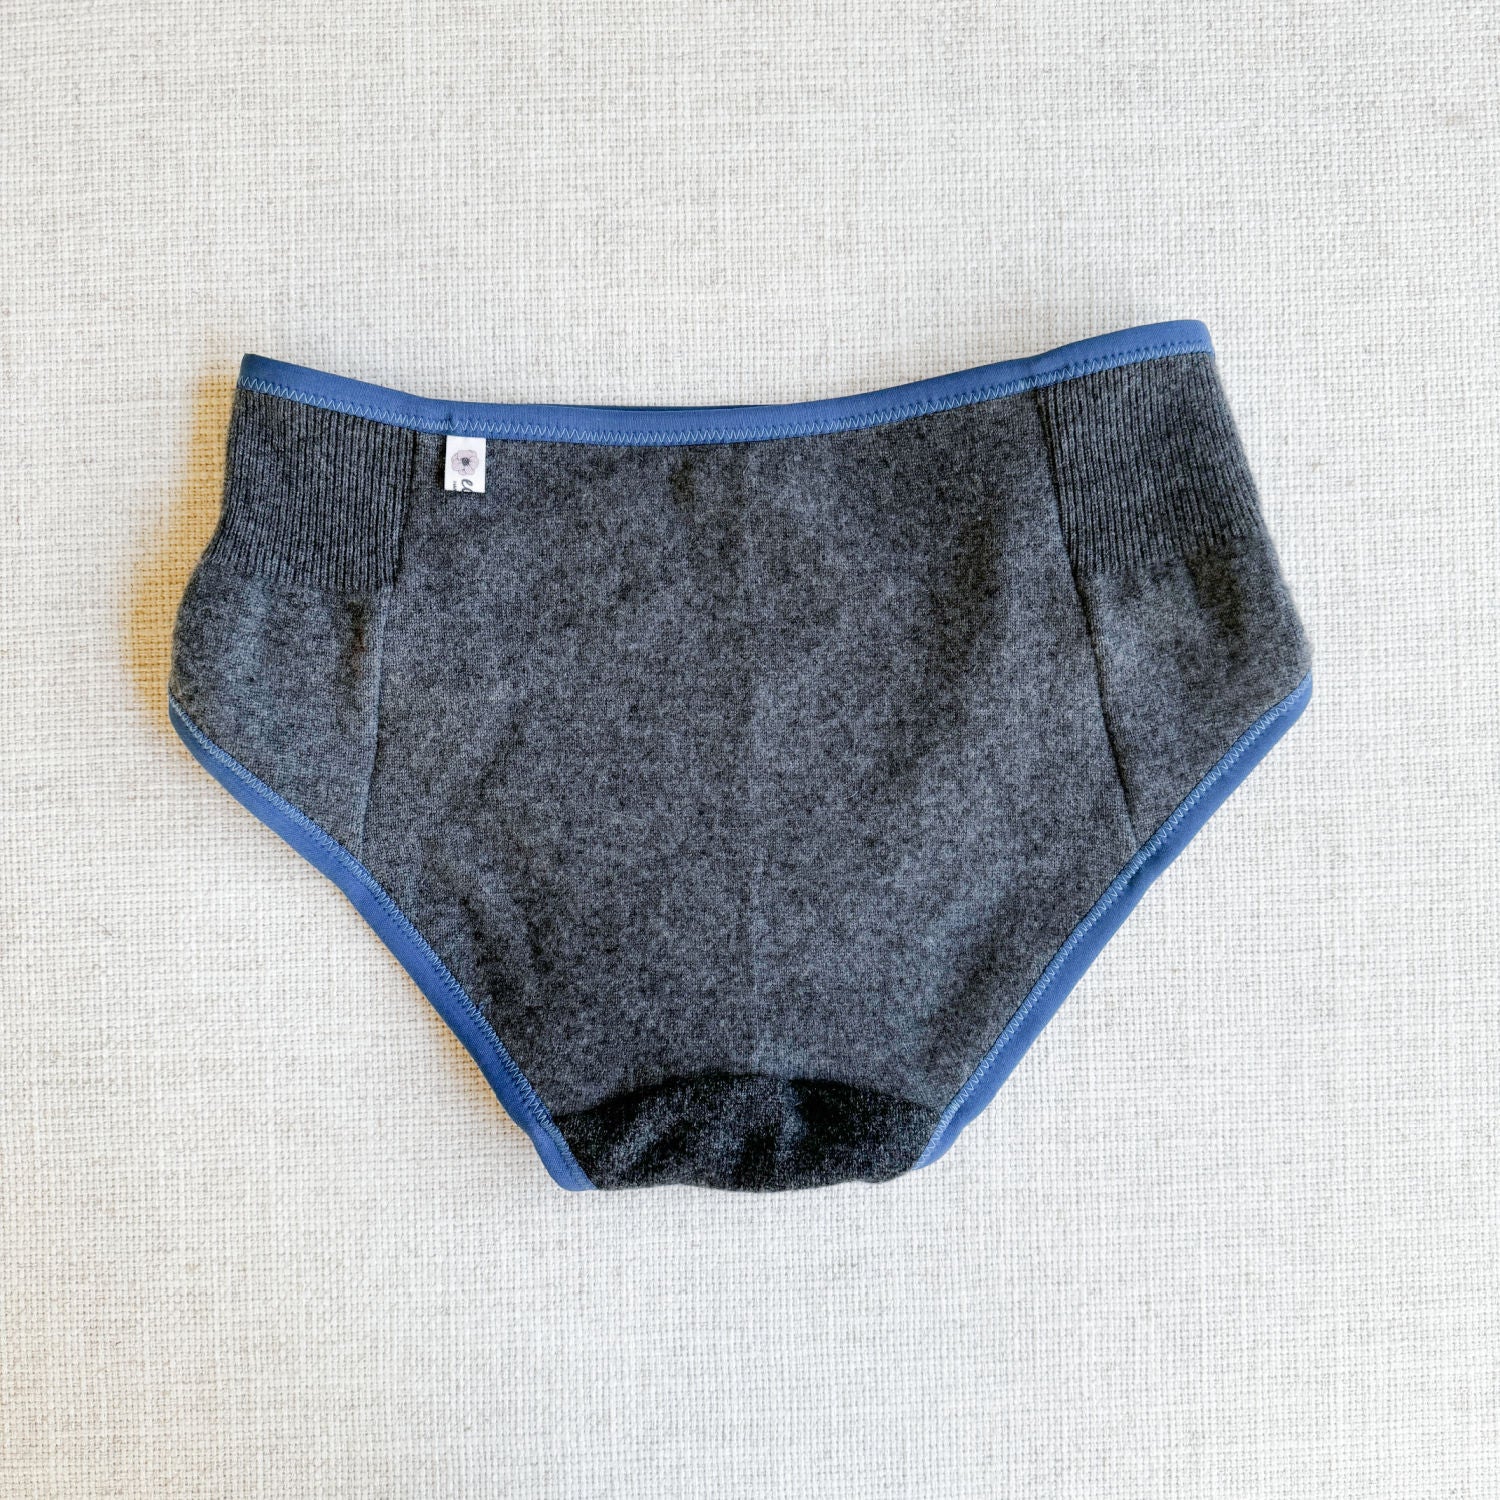 grey cashmere french brief, cashmere underwear for women